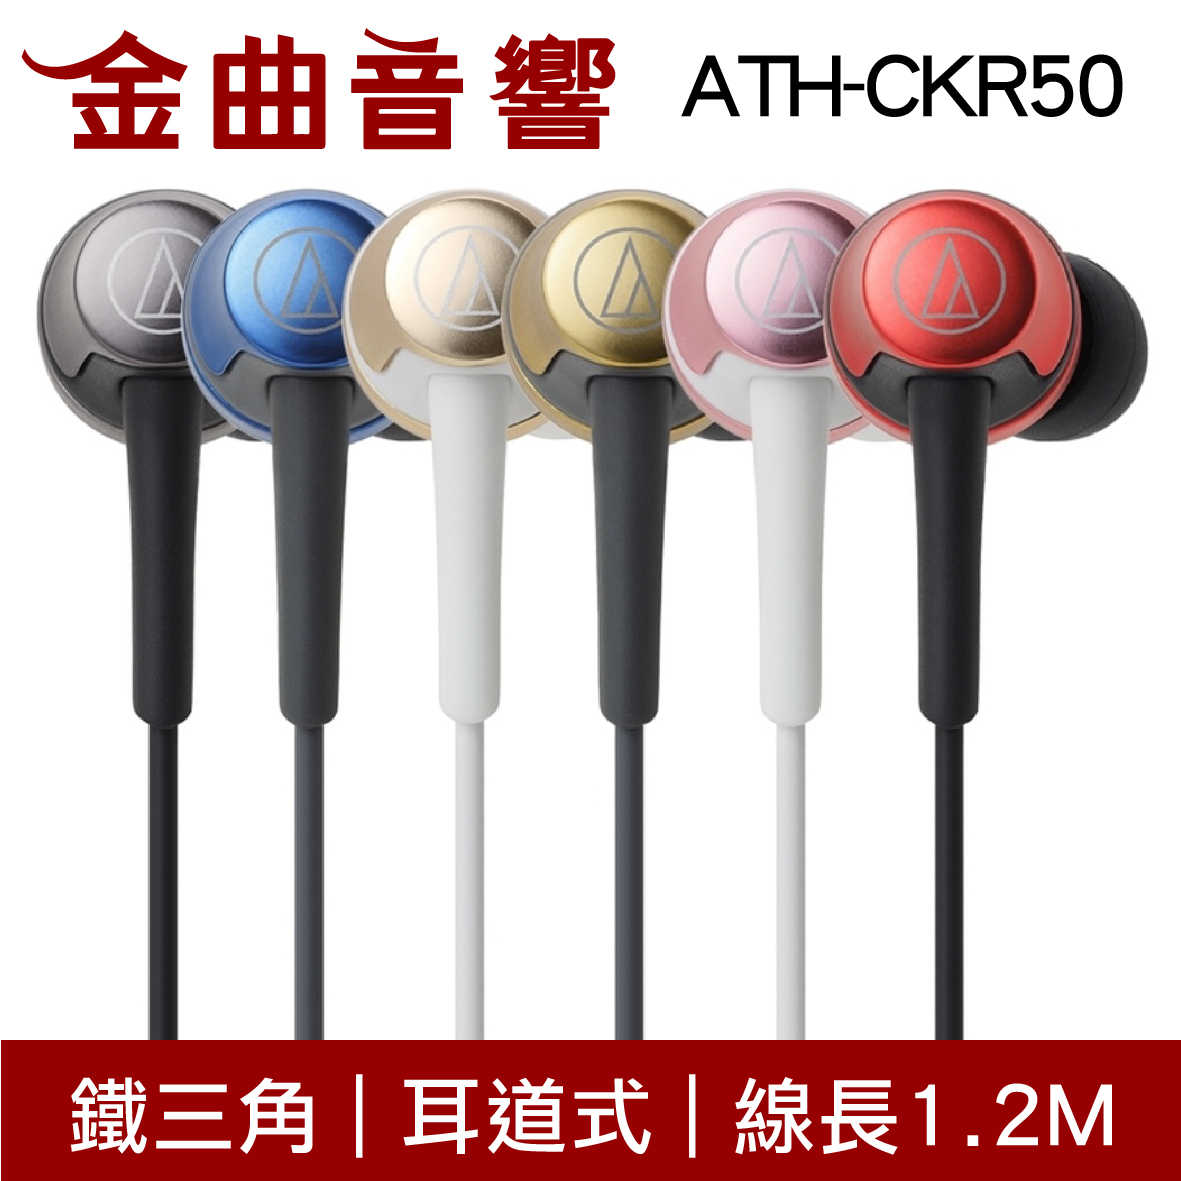 鐵三角 ATH-CKR50 紅色 耳道式耳機 | 金曲音響